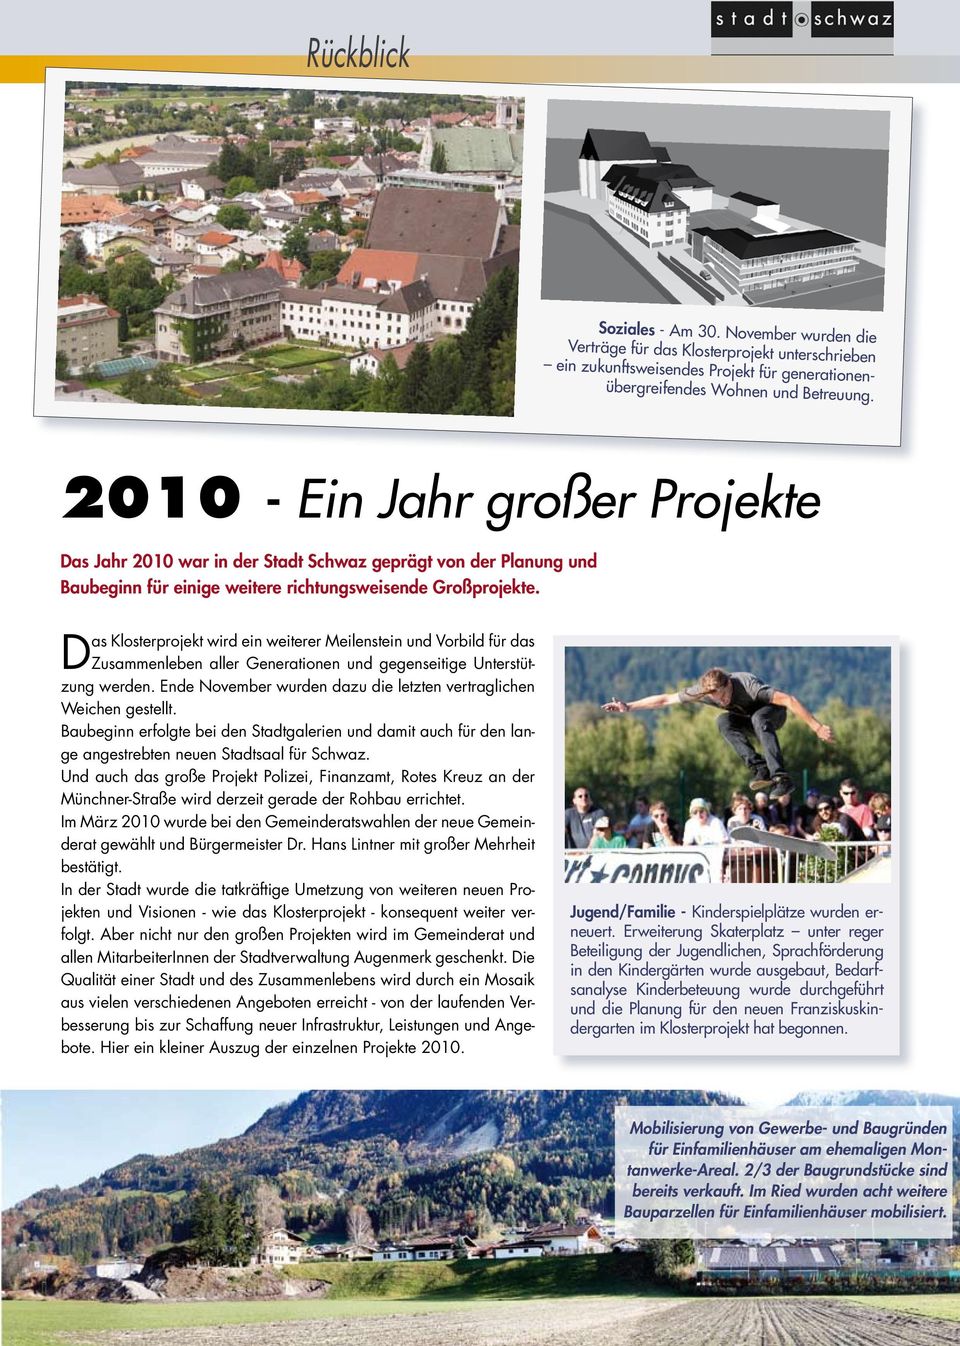 2010 - Ein Jahr großer Projekte Das Jahr 2010 war in der Stadt Schwaz geprägt von der Planung und Baubeginn für einige weitere richtungsweisende Großprojekte.